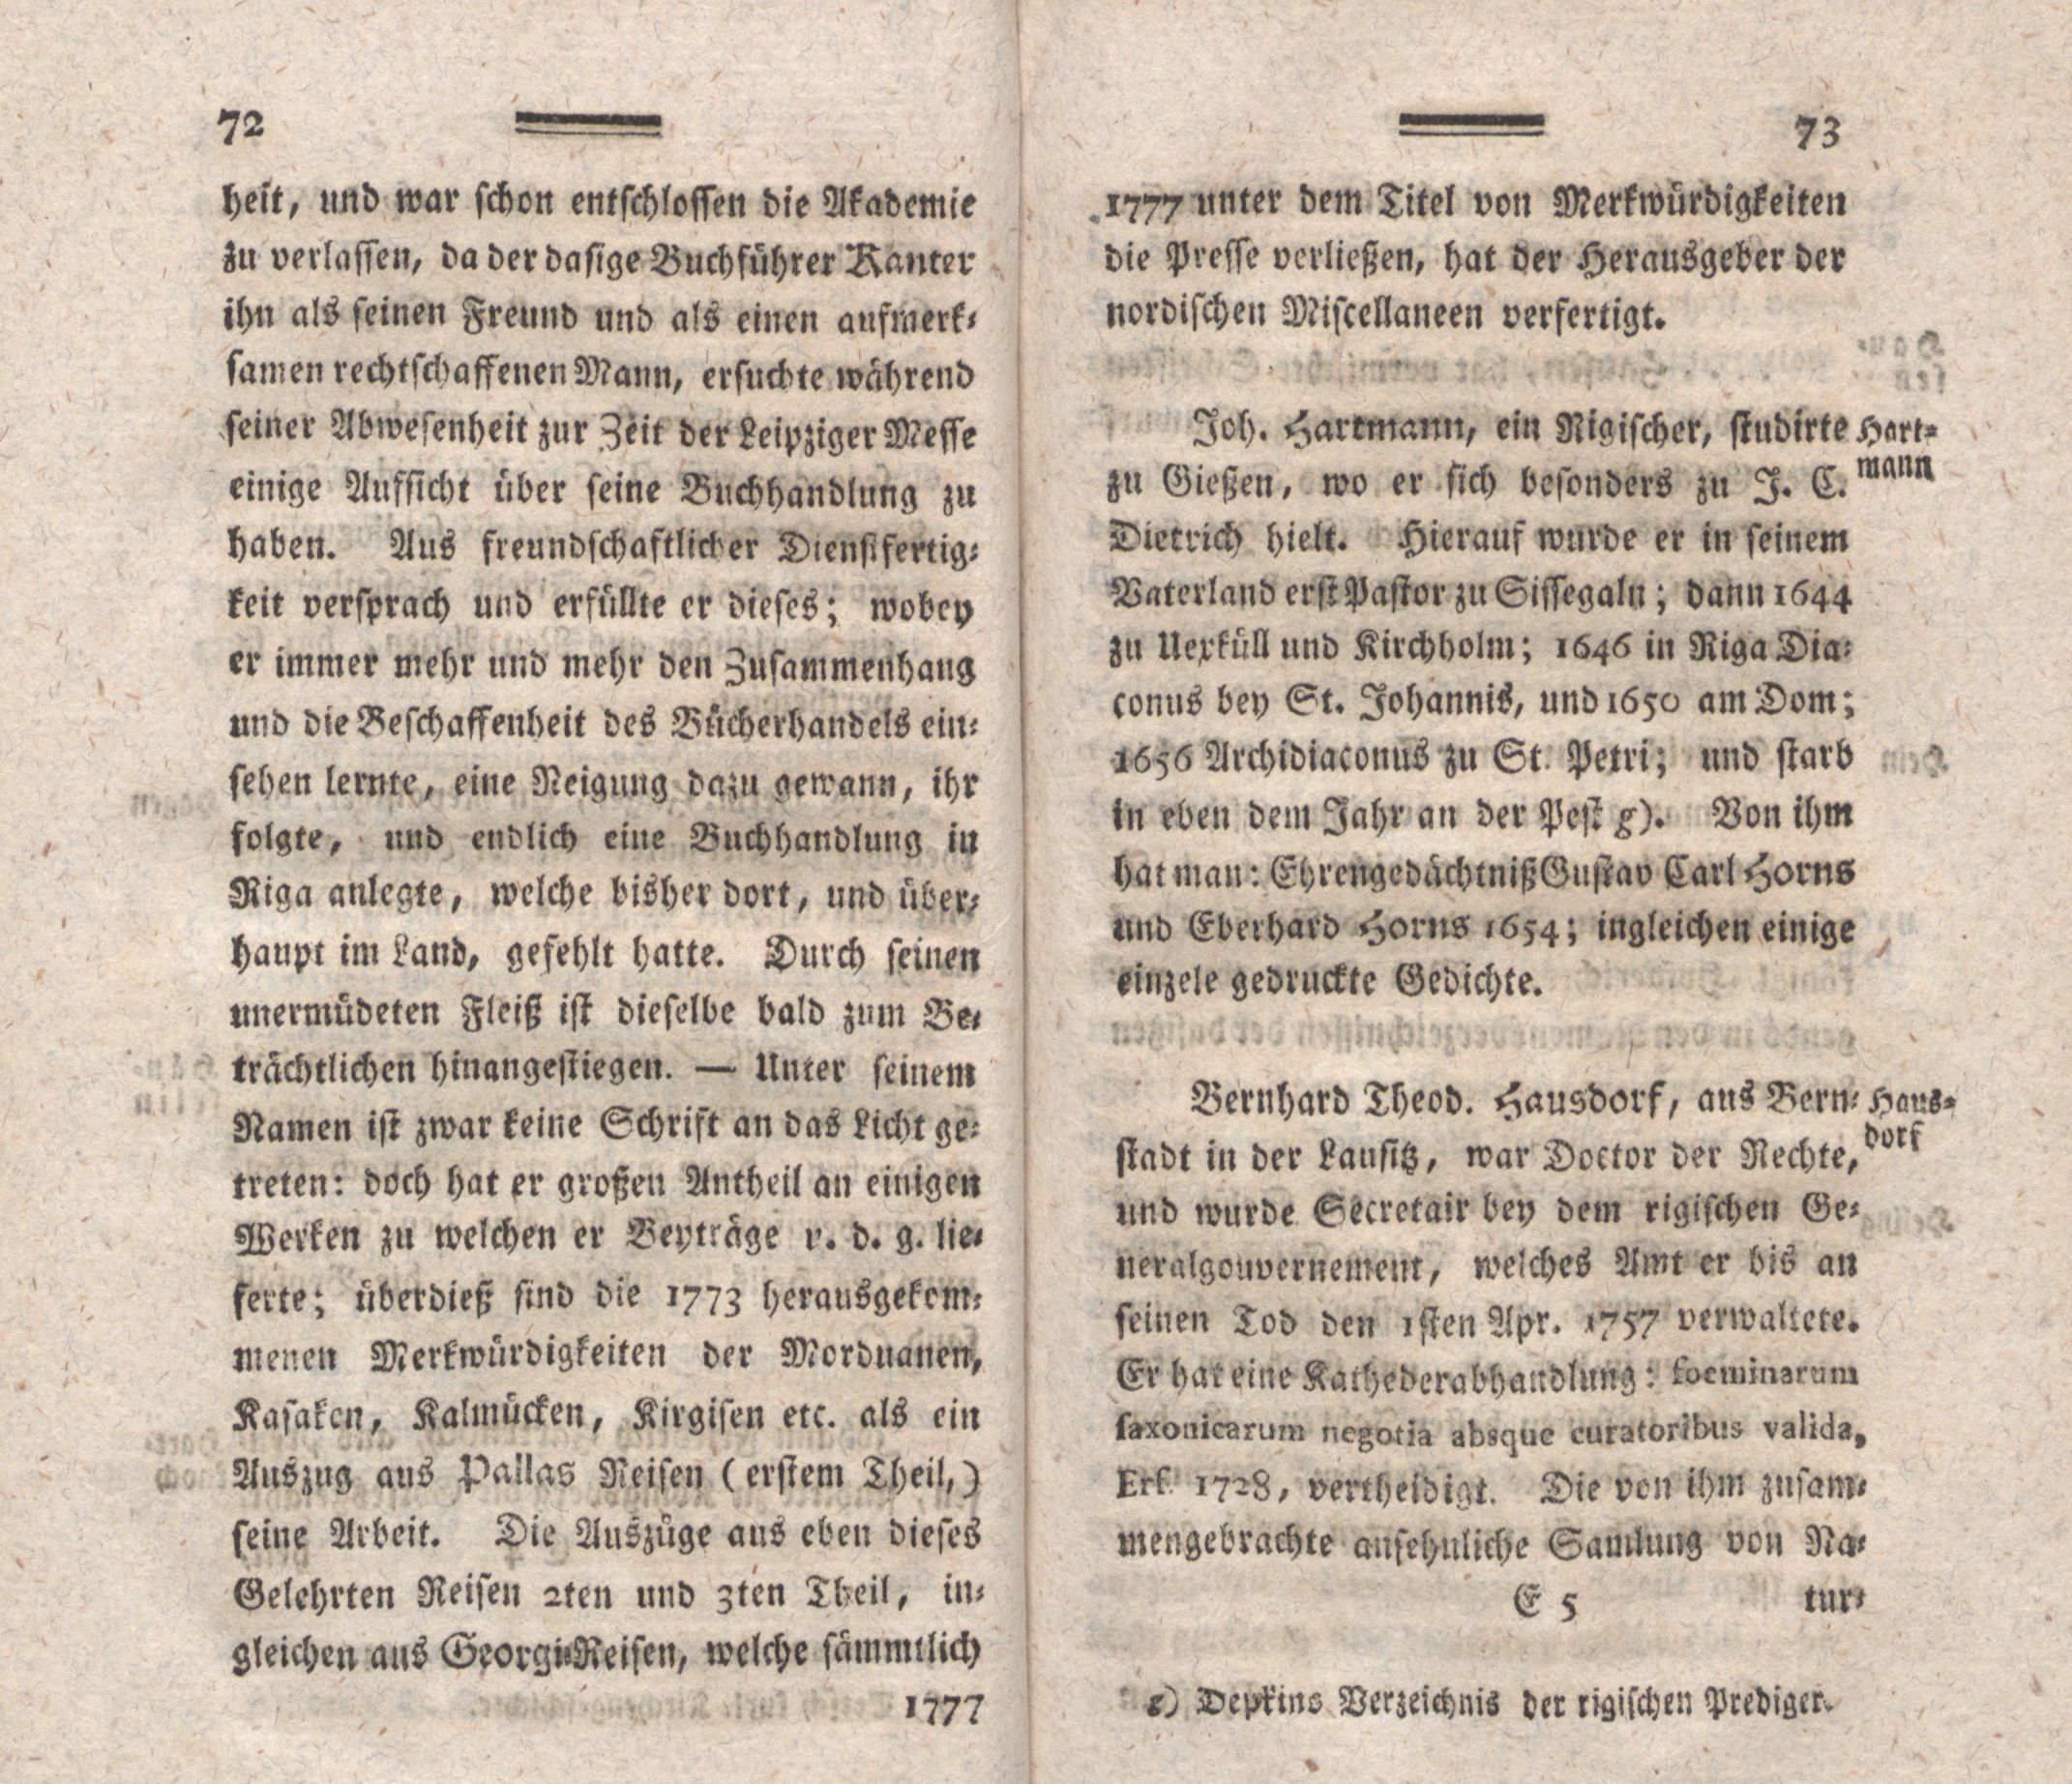 Nordische Miscellaneen [04] (1782) | 38. (72-73) Main body of text